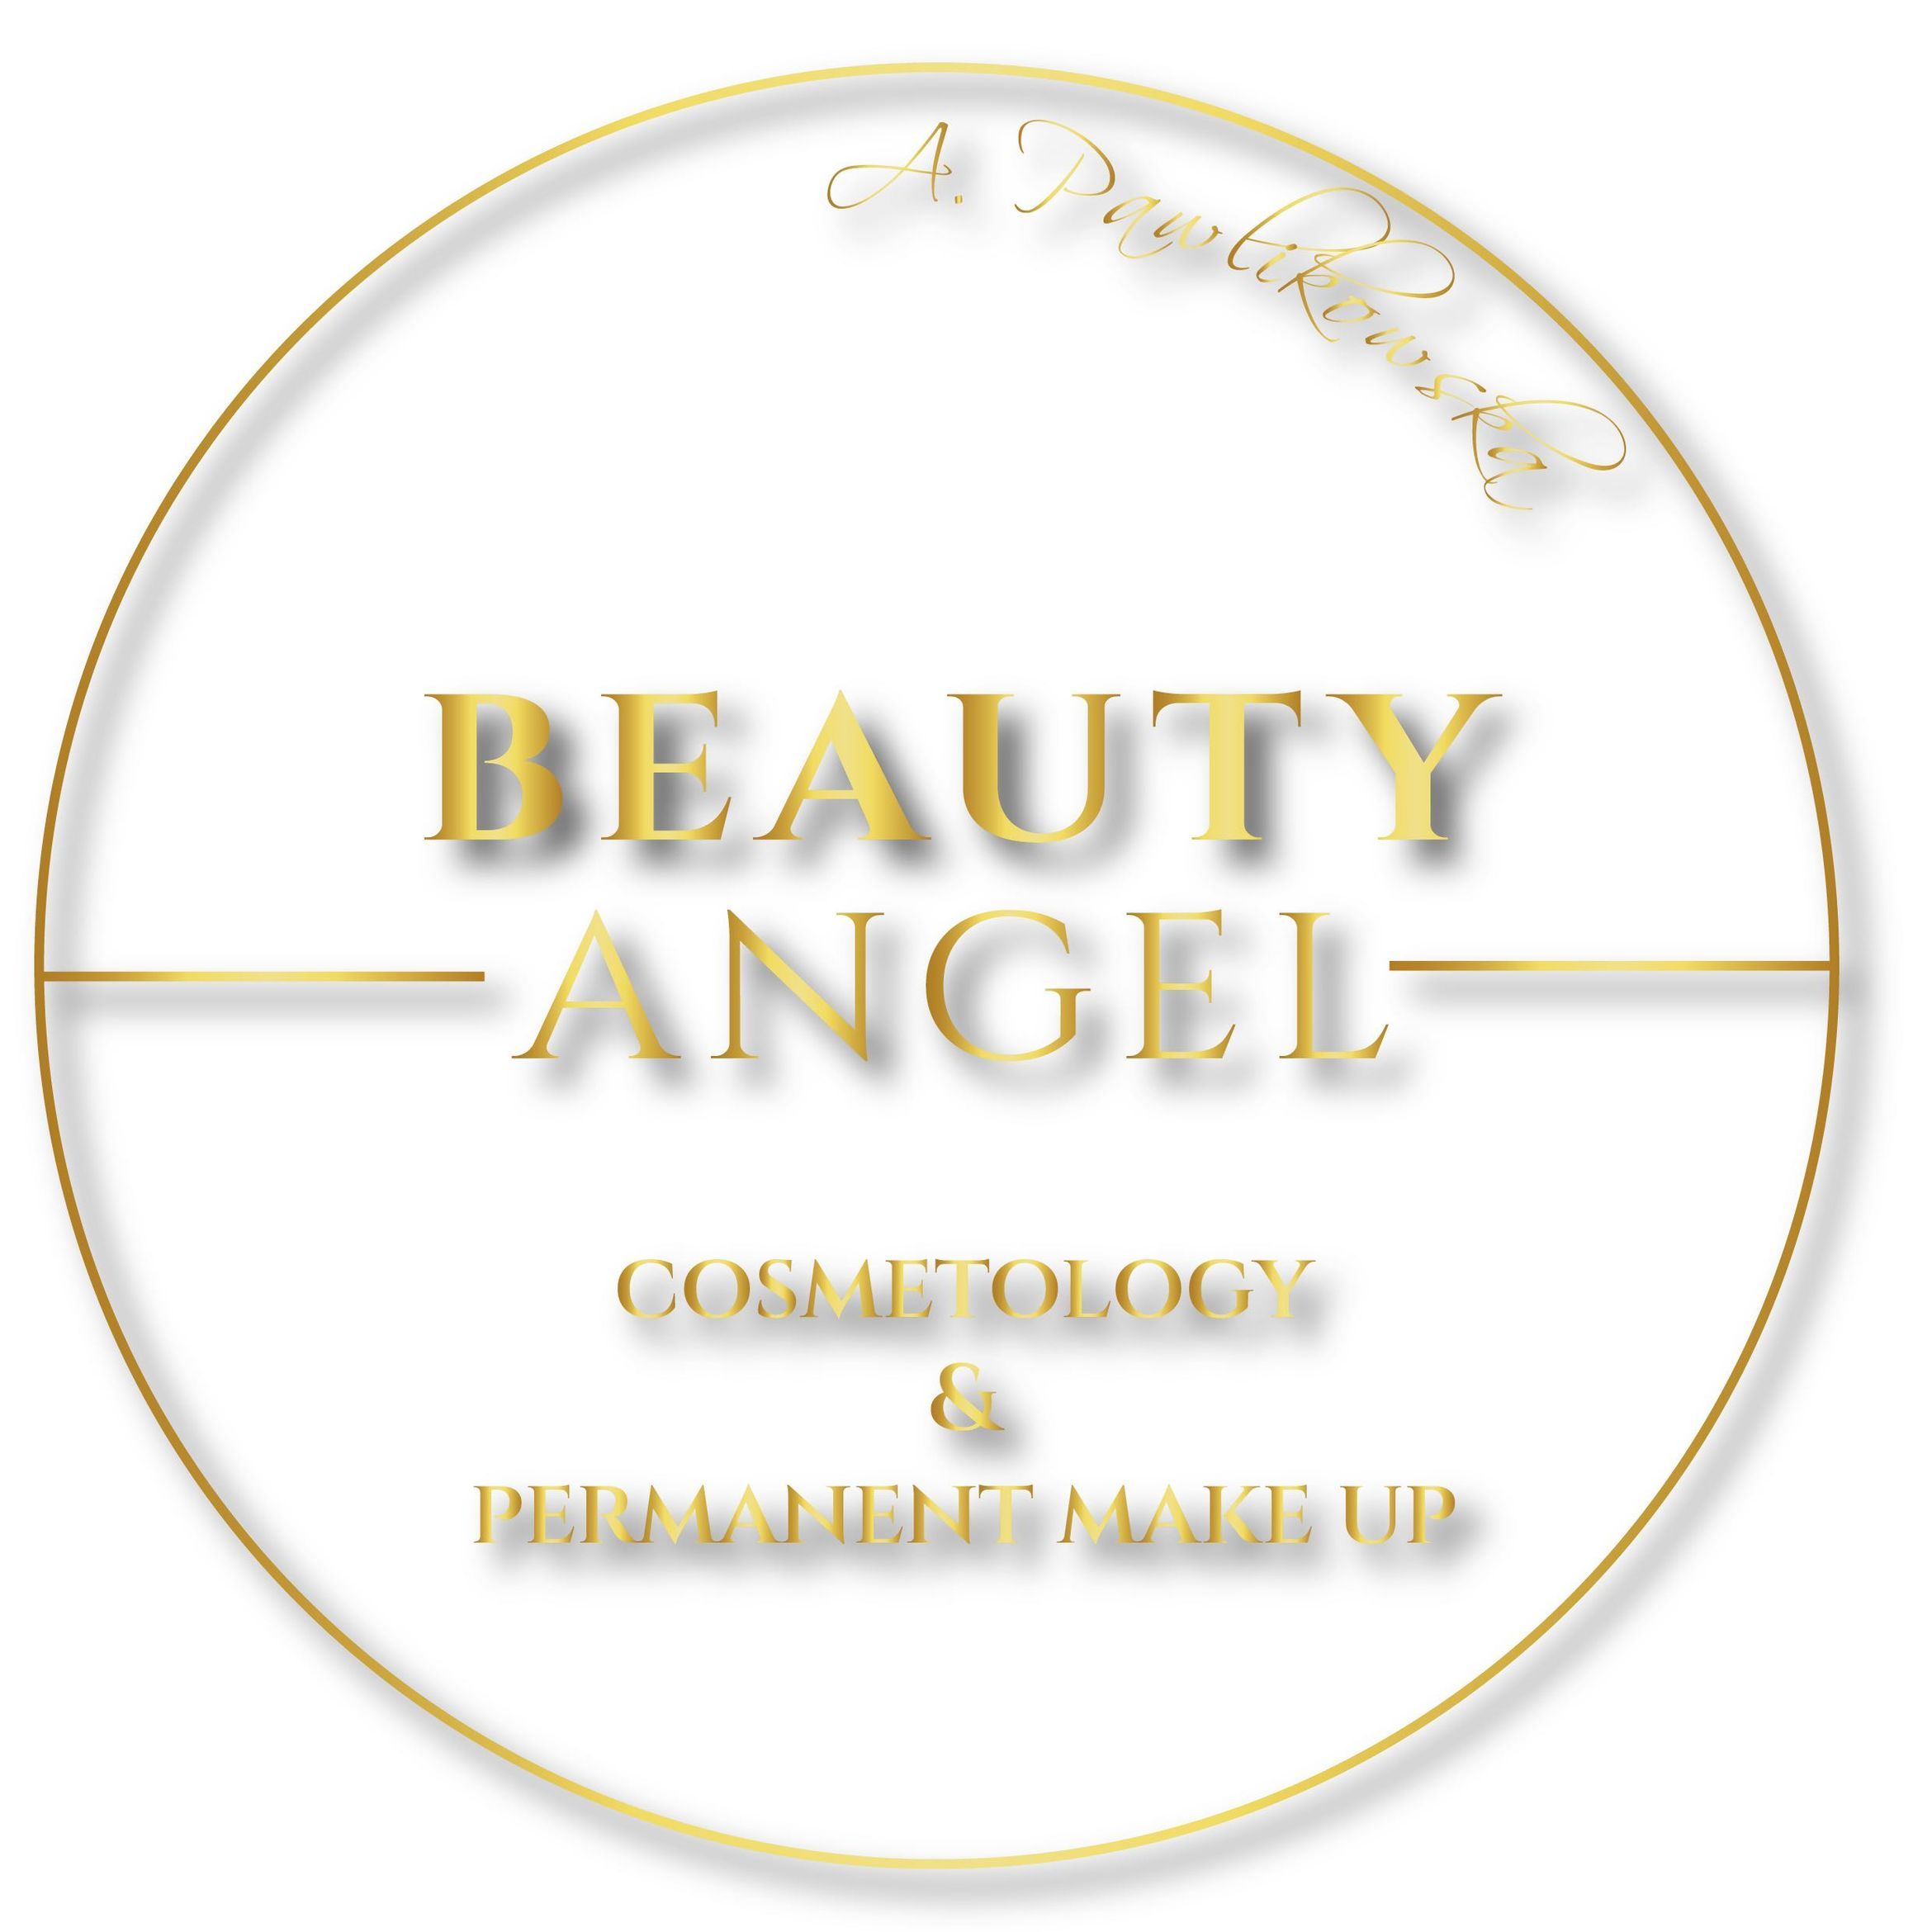 Studio Beauty Angel, Jana Pawła II 40, 59-300, Lubin